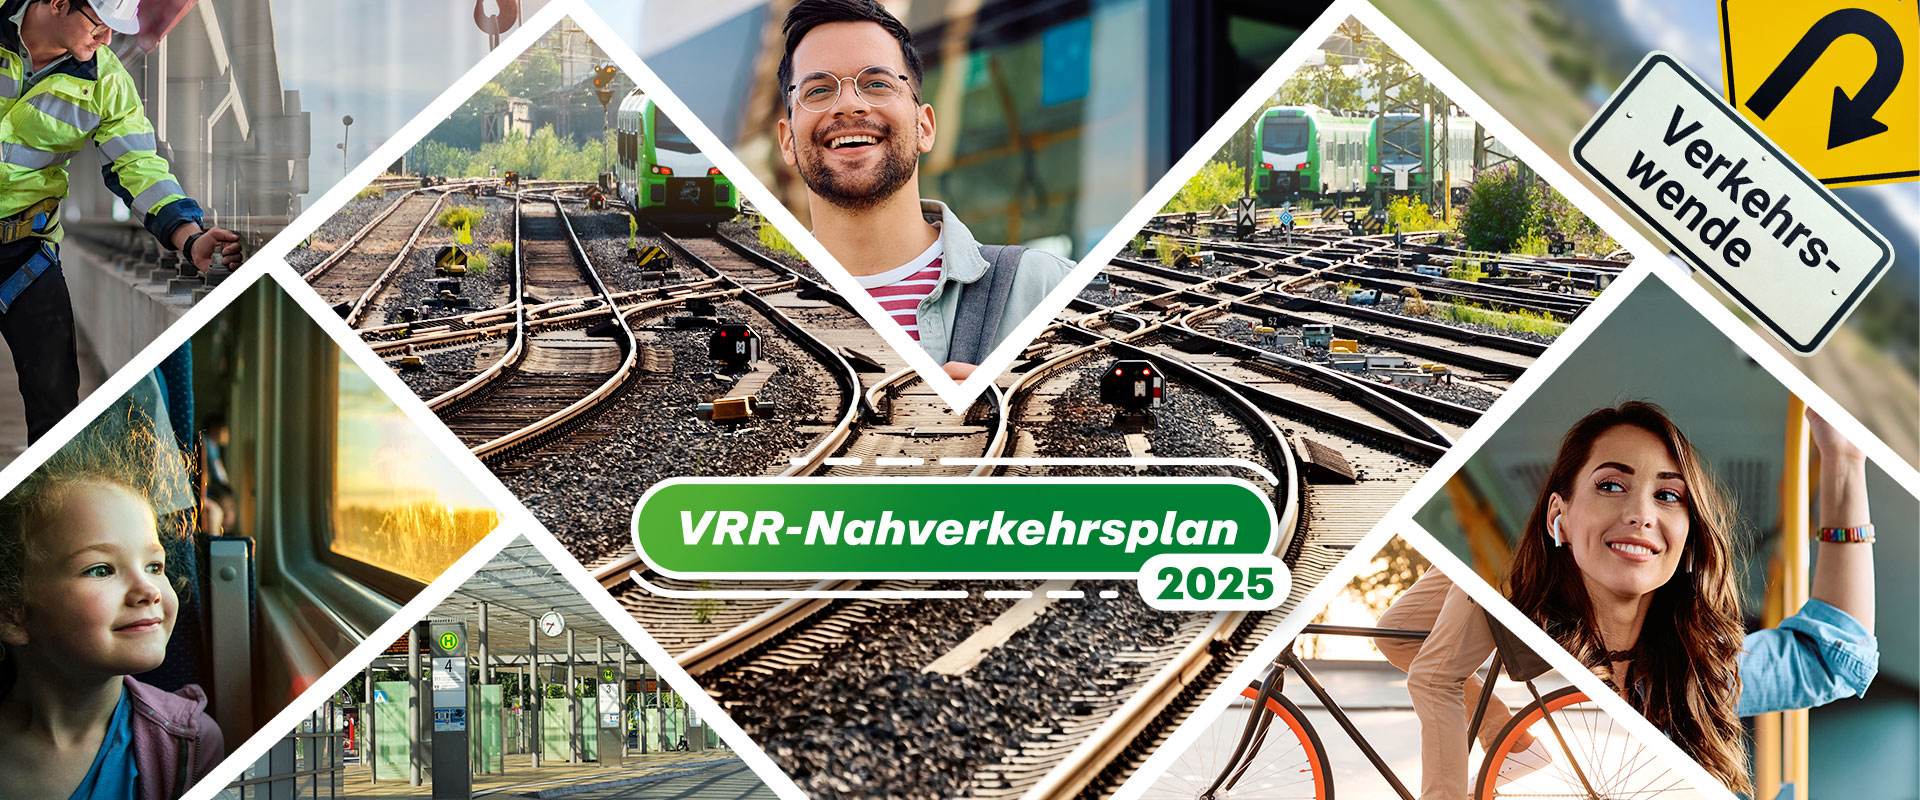 Bilder-Collage mit Fahrgästen, Infrastruktur, Zügen, einen Fahrrad und den Begriffen "VRR-Nahverkehrsplan 2025" und "Verkehrswende"